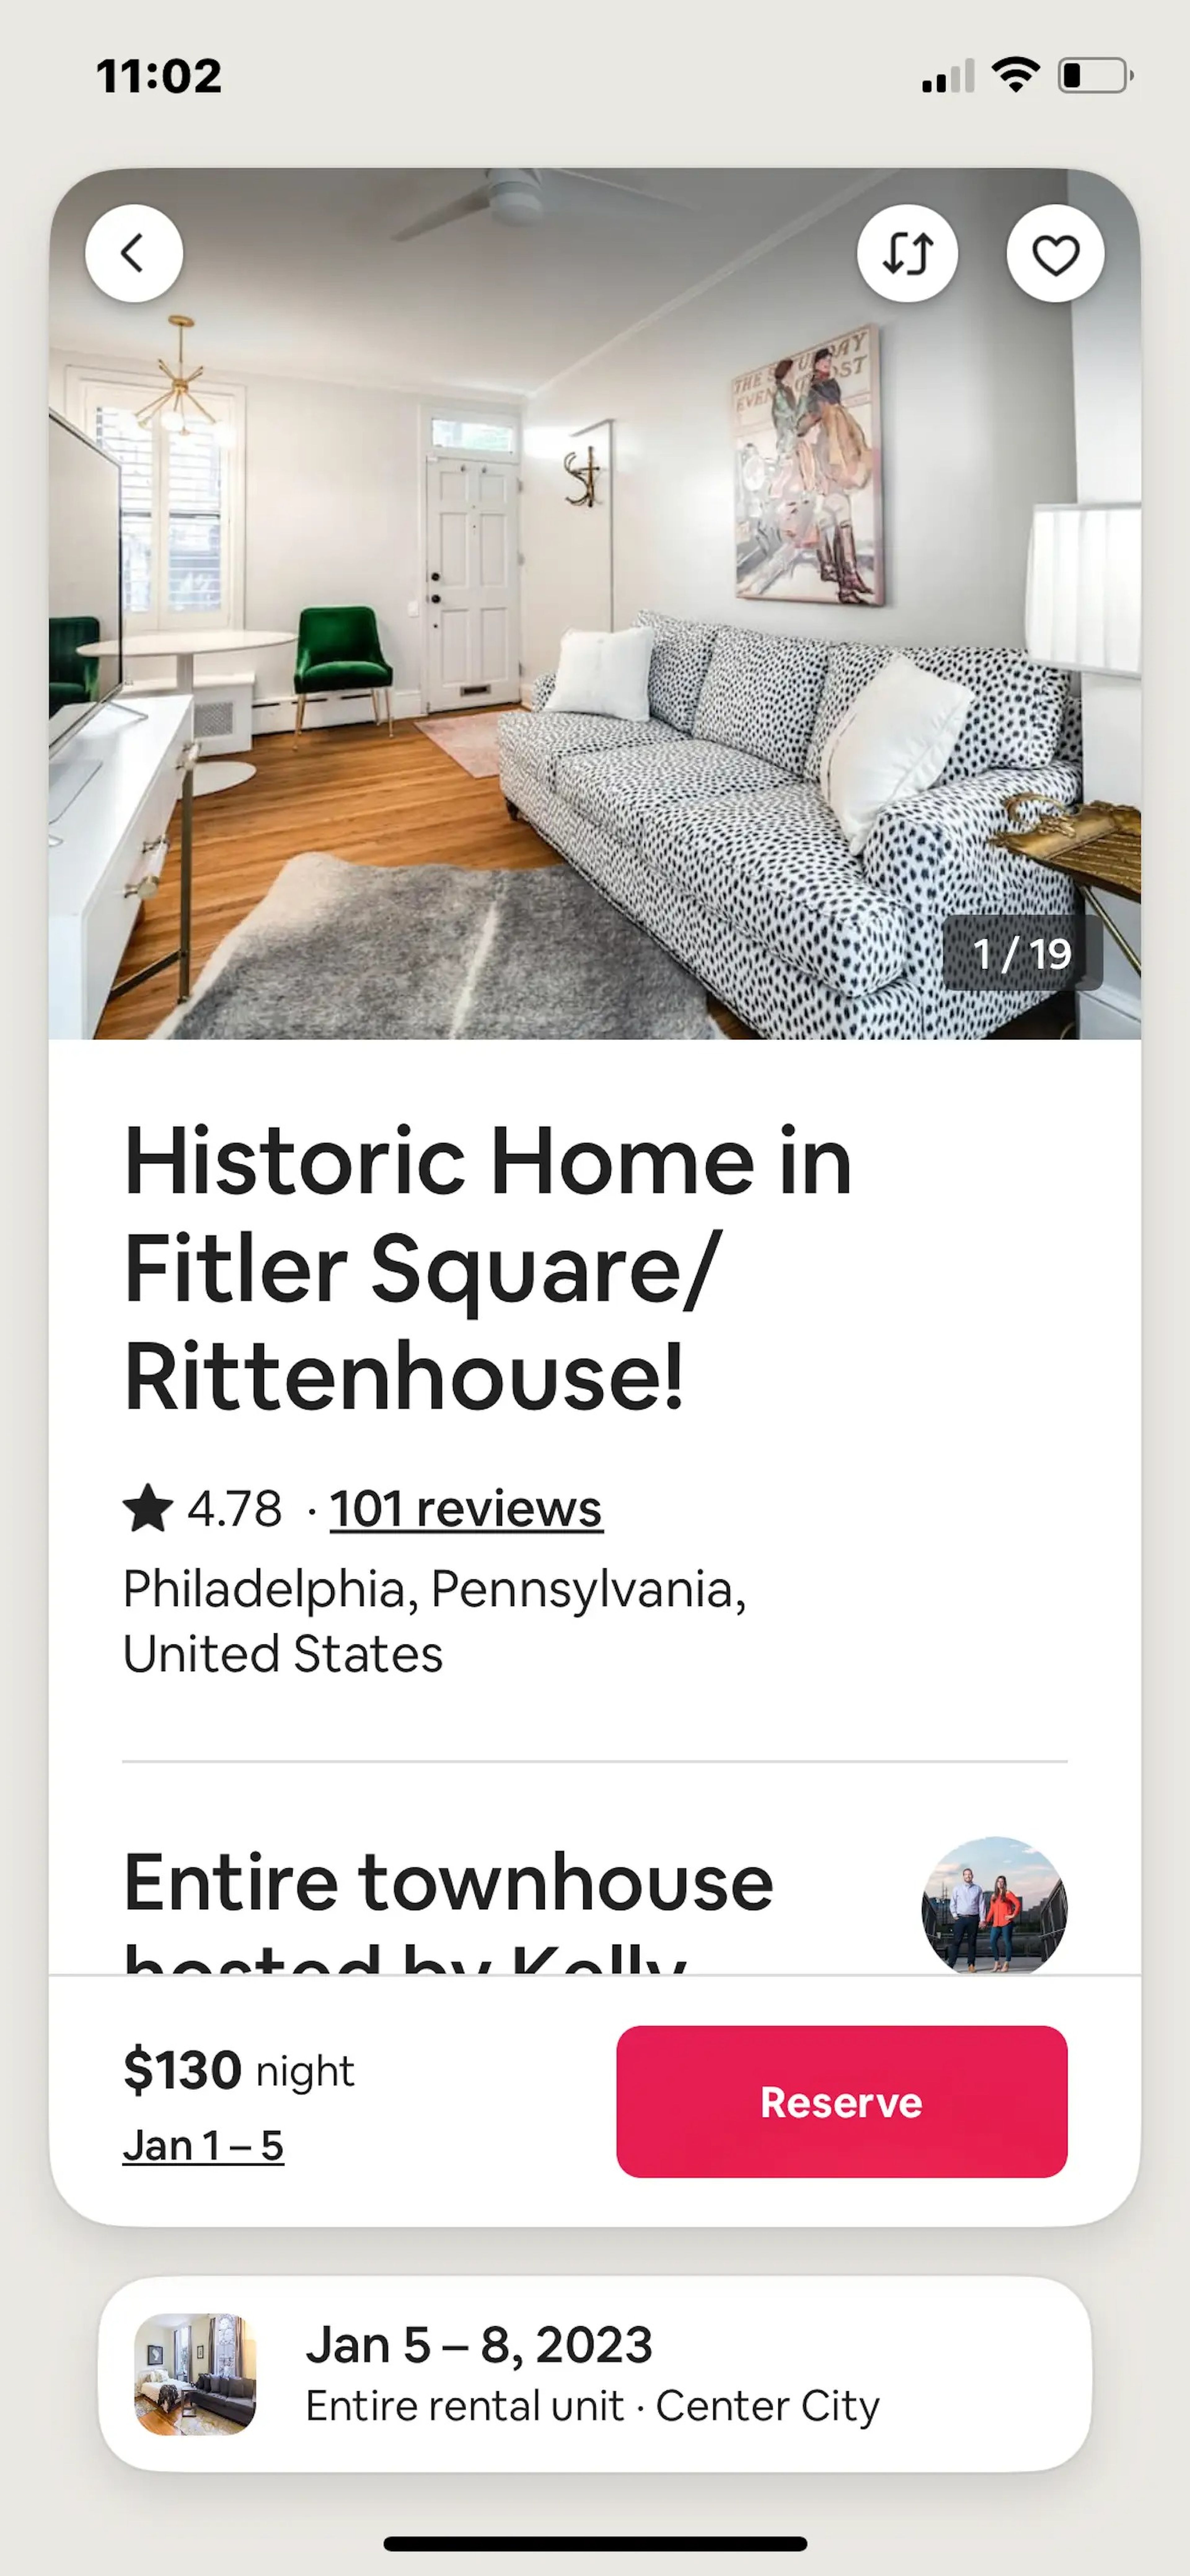 El anuncio de Airbnb de la casa de Flaherty mostraba una calificación favorable y más de 100 reseñas.